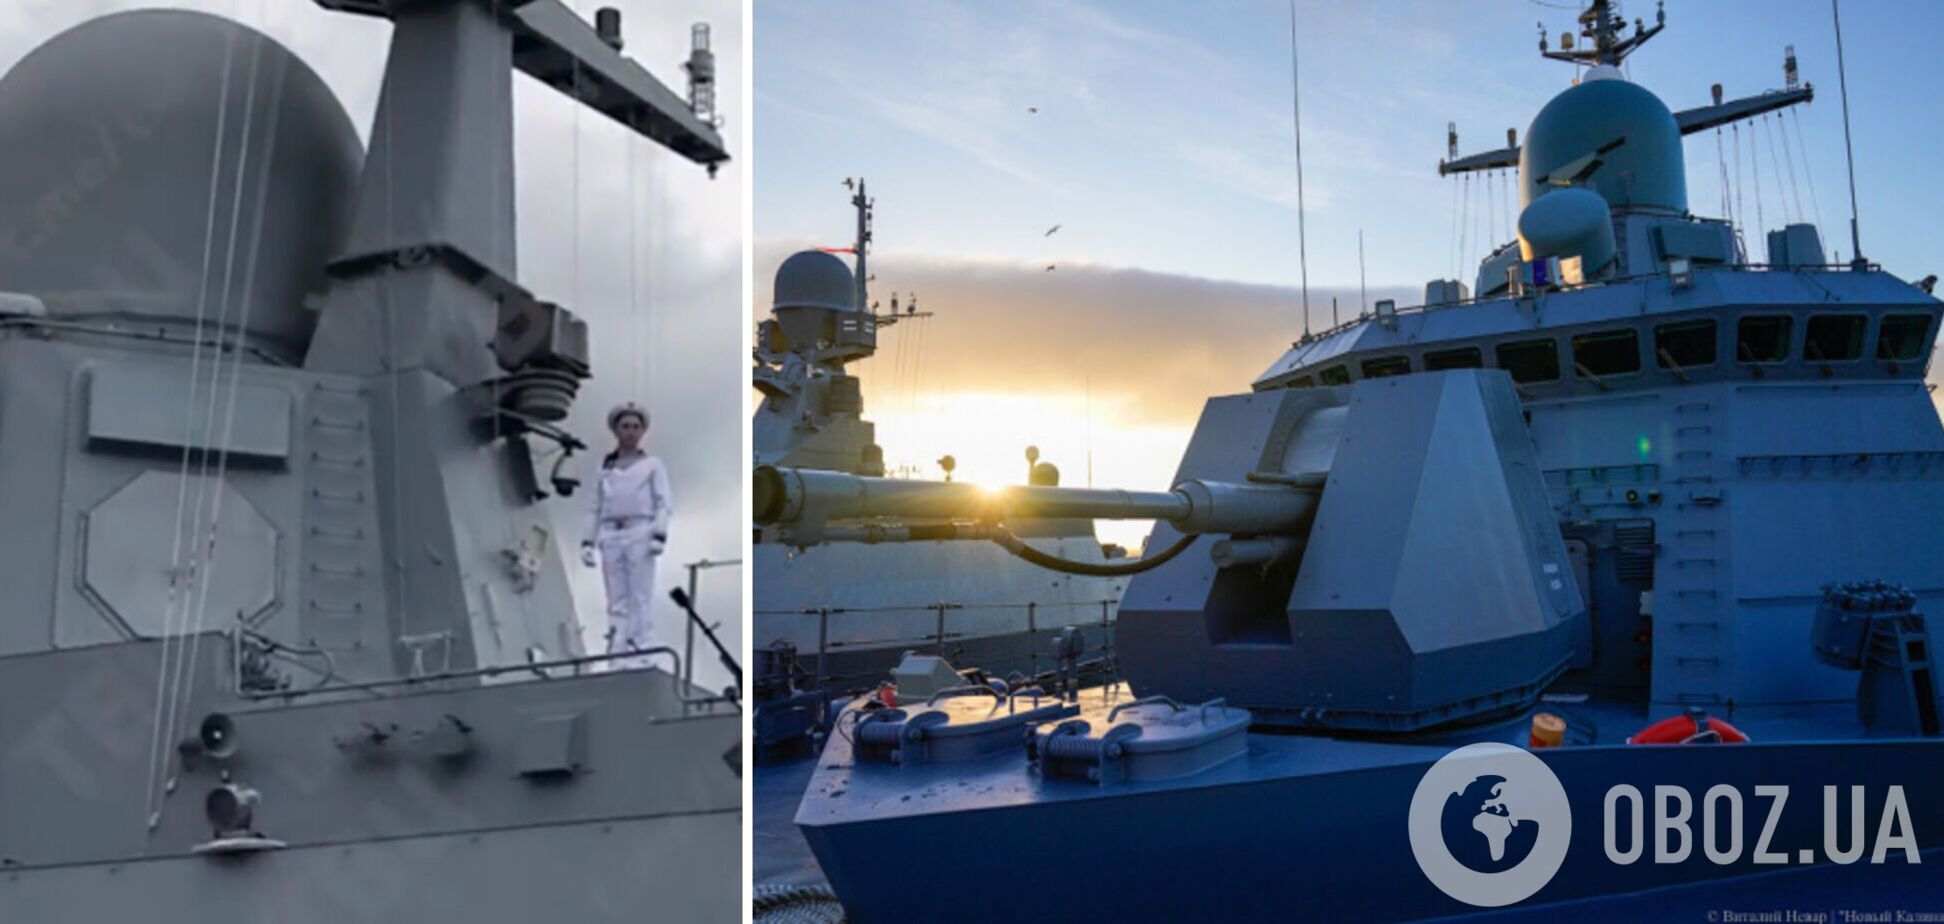 Россия построила замену потопленному крейсеру 'Москва': что известно о малом ракетном корабле 'Циклон'. Видео